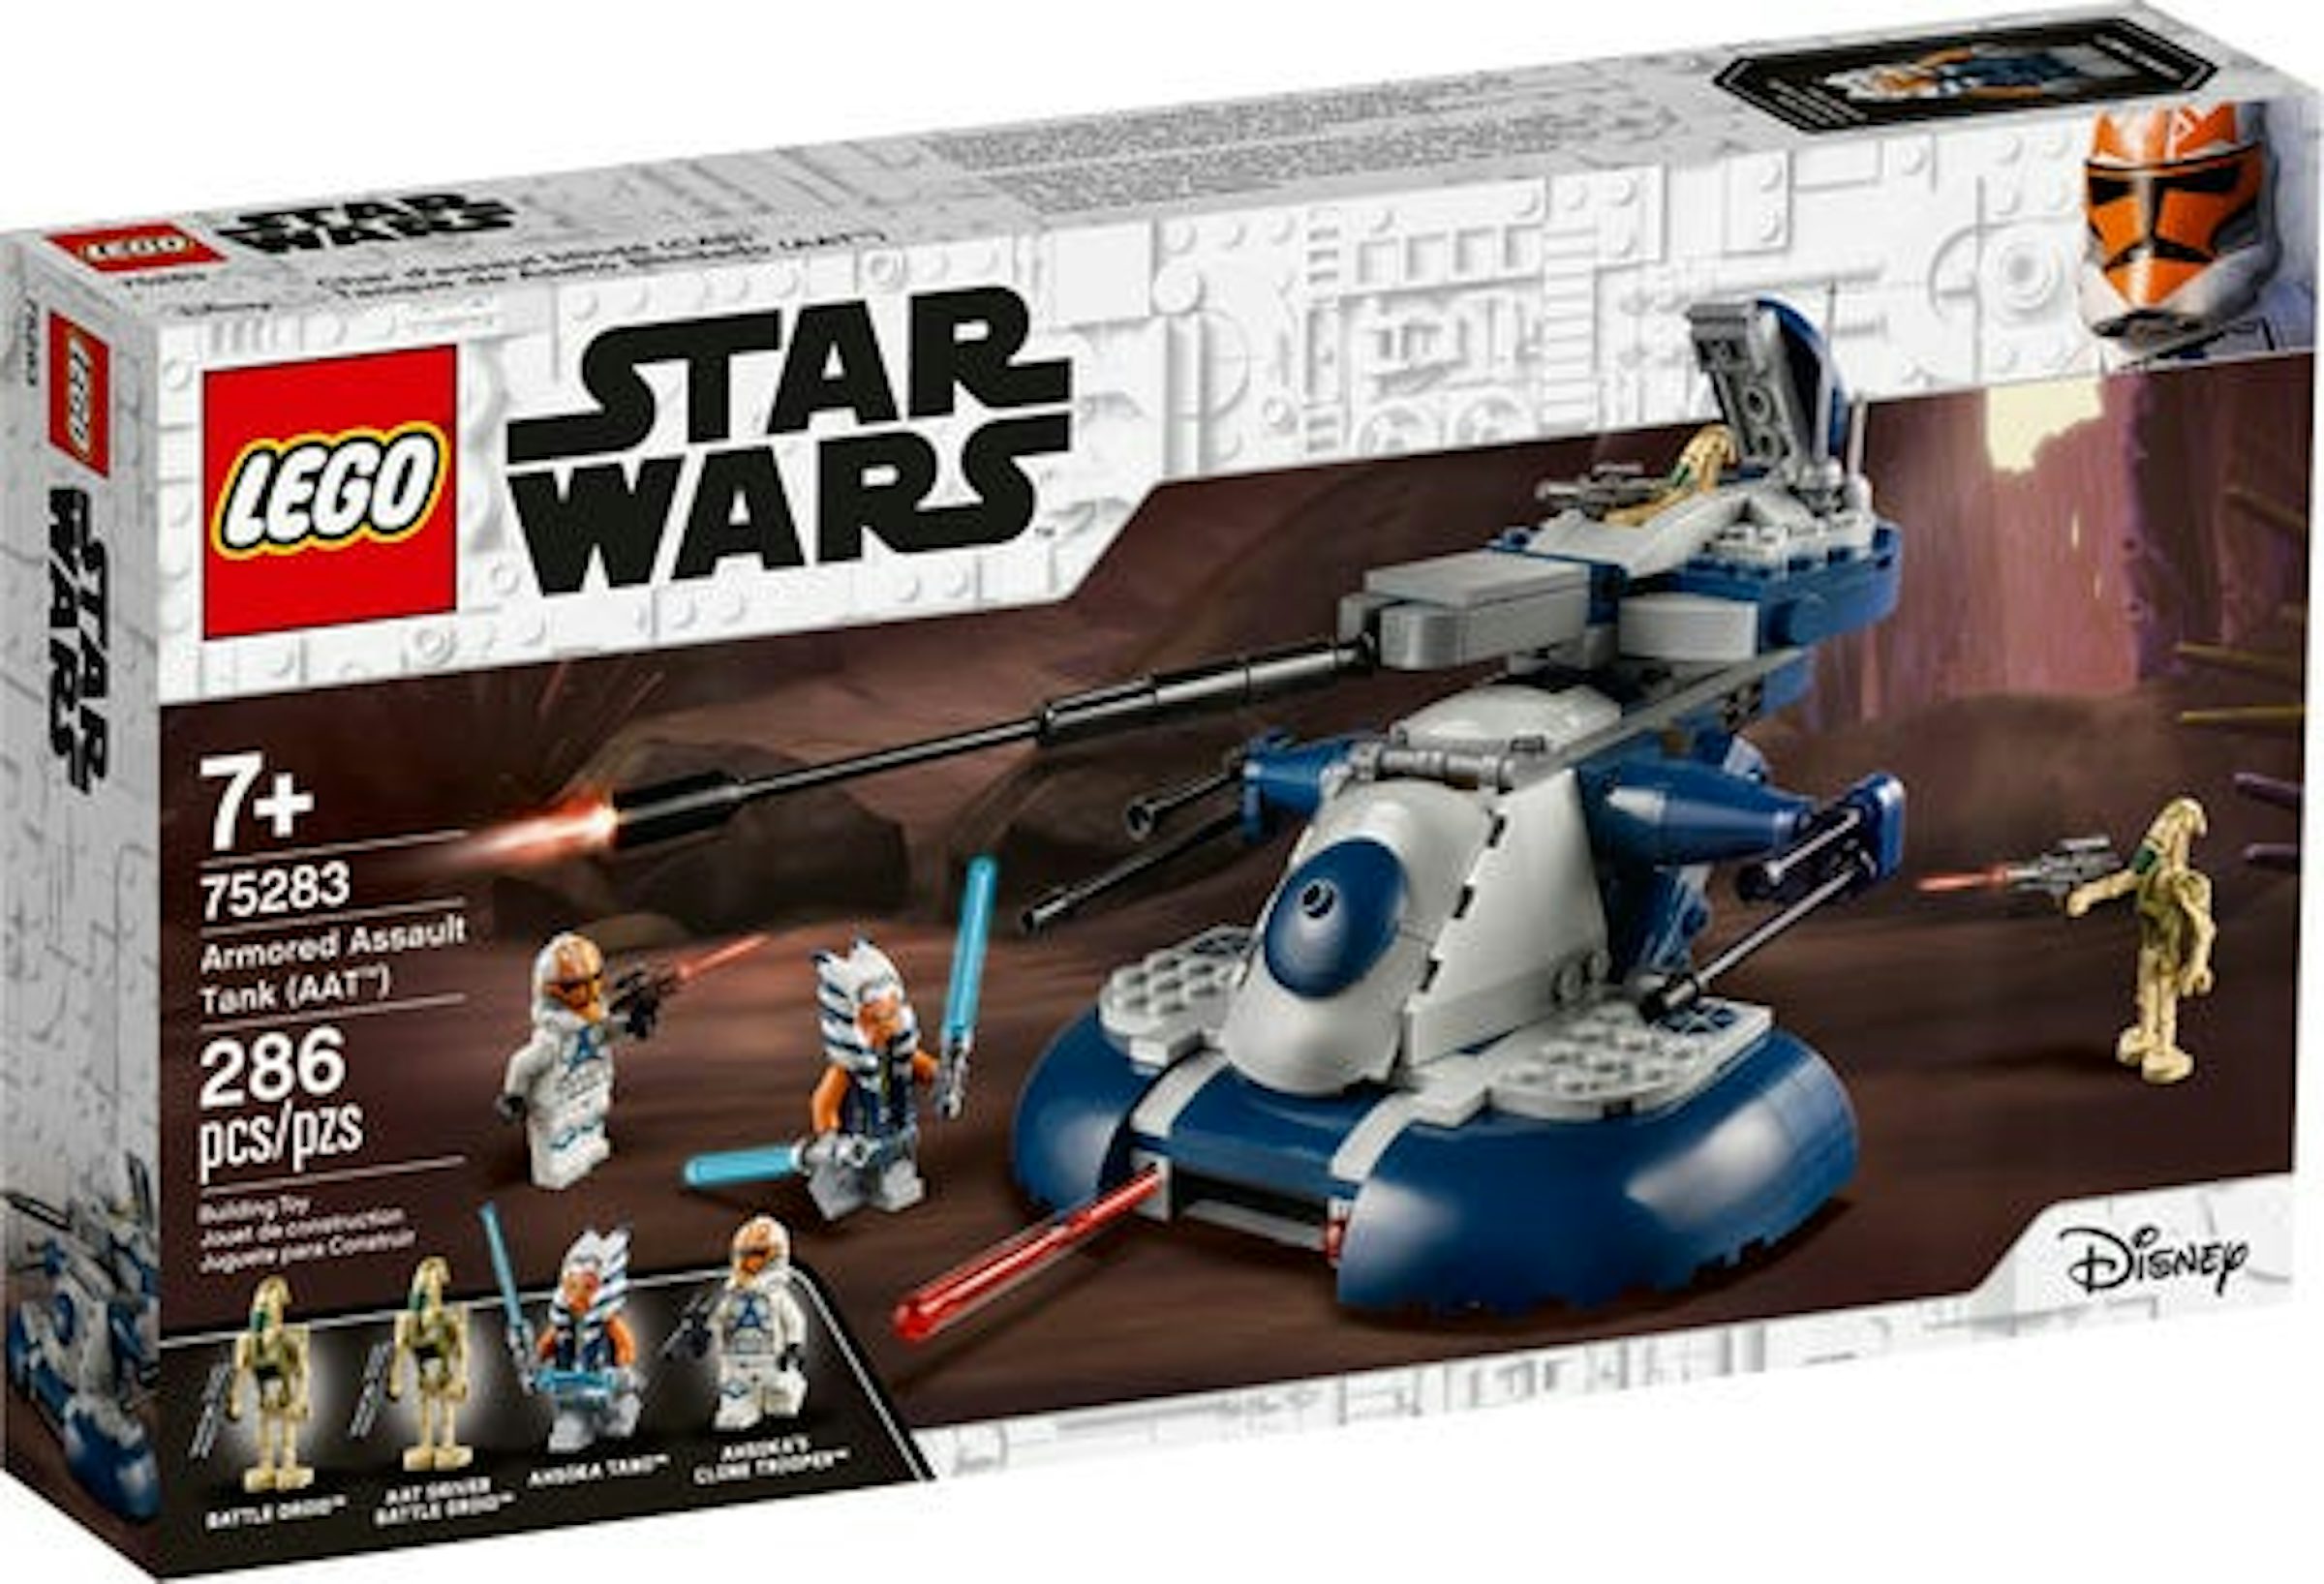 Forsvinde Vores firma Hemmelighed LEGO Star Wars Armored Assault Tank (AAT) Set 75283 - US